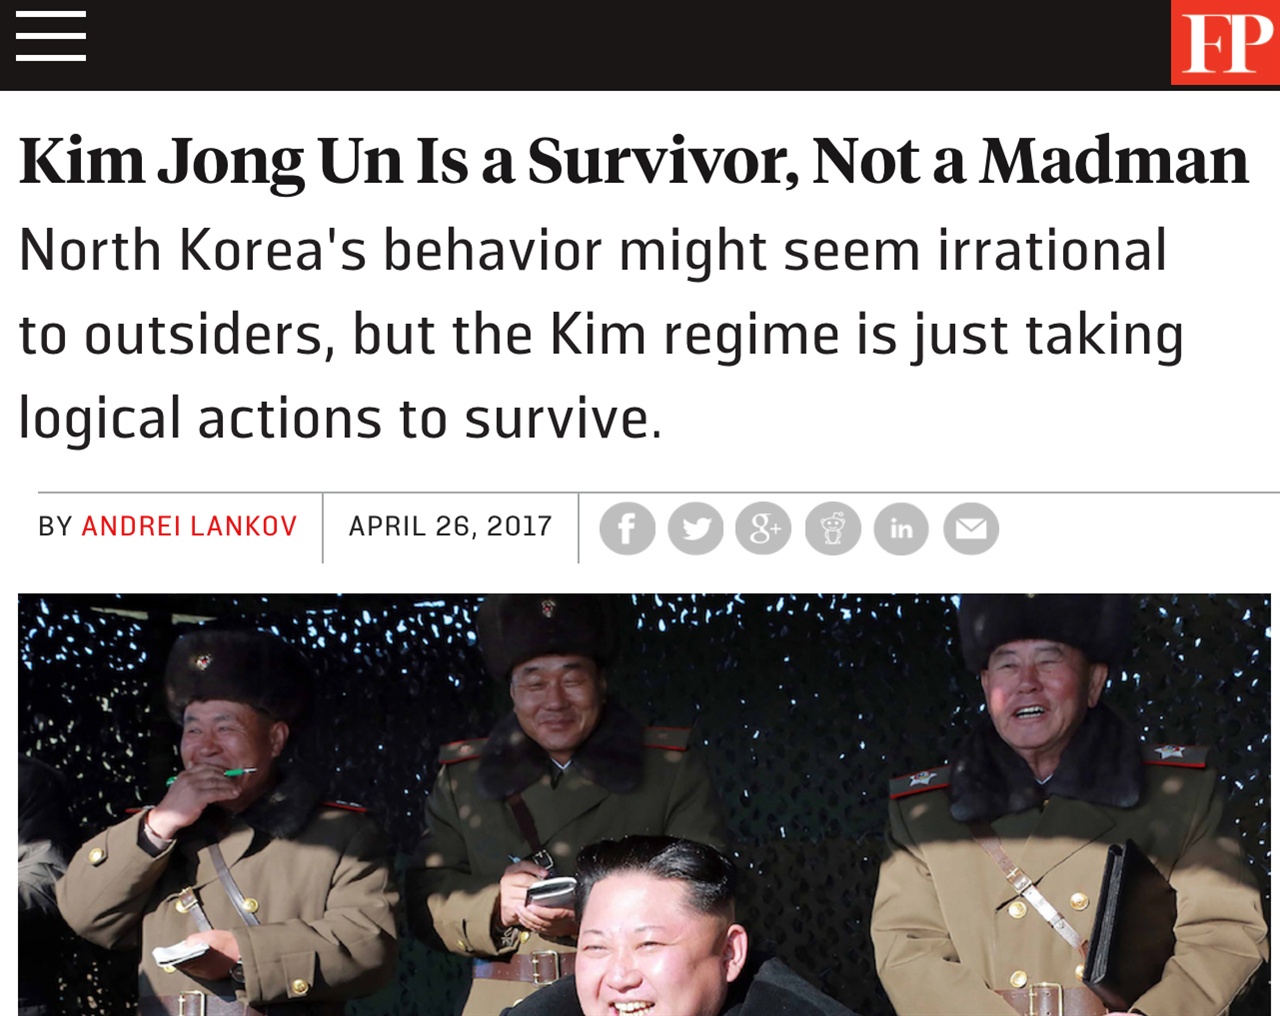 '북한의 행동은 생존을 위한 논리적인 선택.' <포린폴린시>는 북한을 '미치광이' 취급하는 것은 매우 큰 오해라는 점을 강조한다 